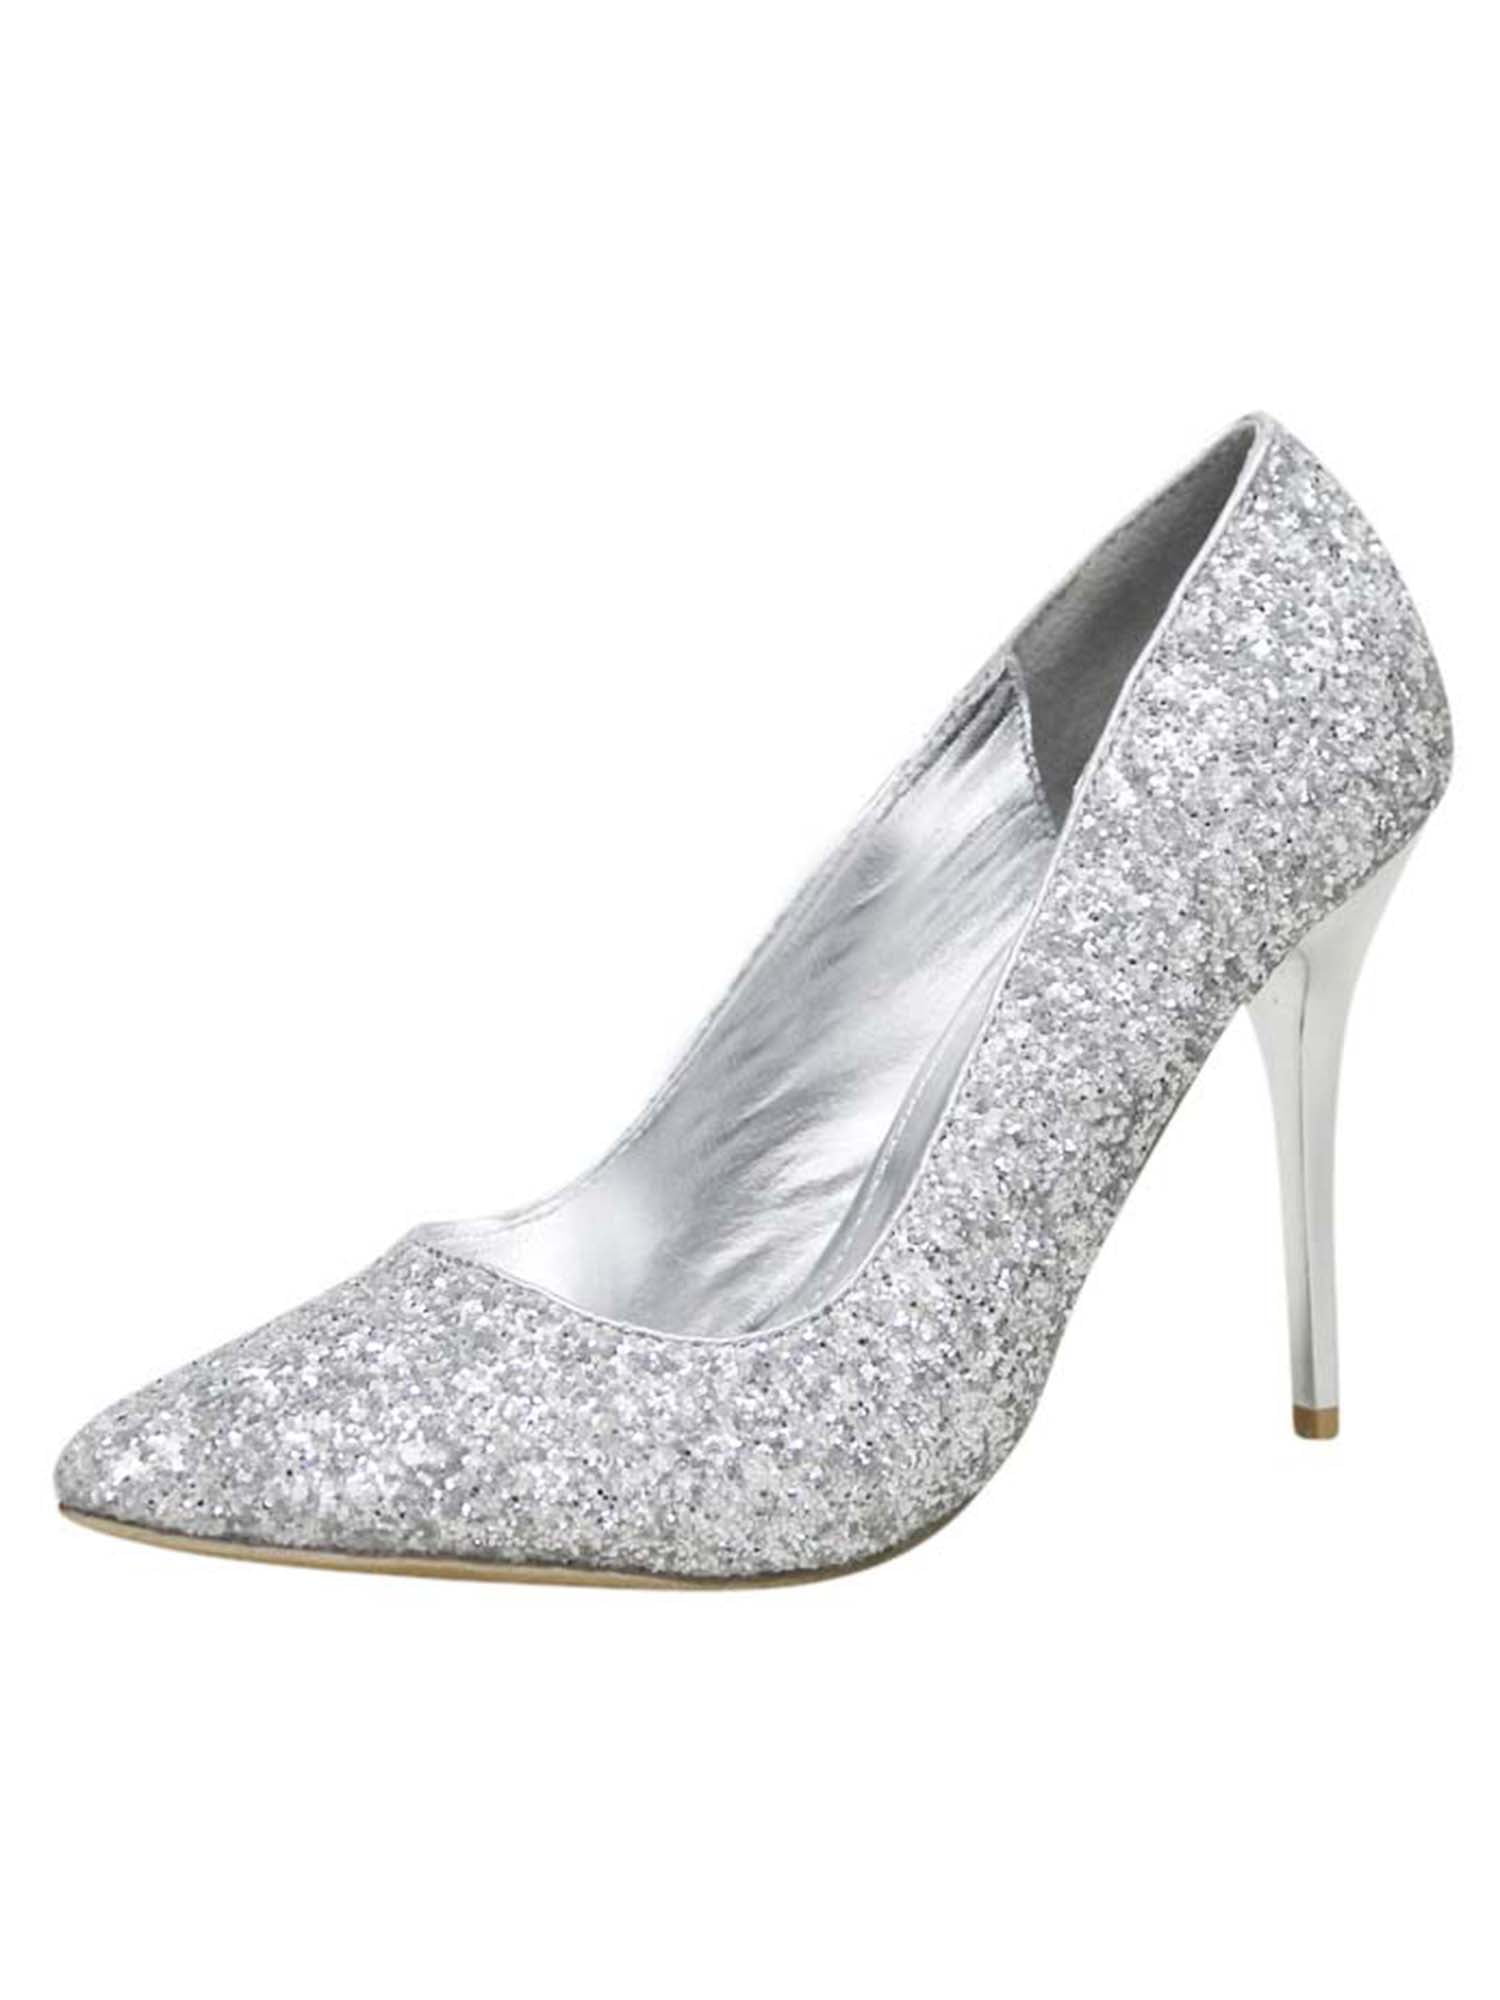 Silver Glitter Stiletto Pumps Women Size 10 -